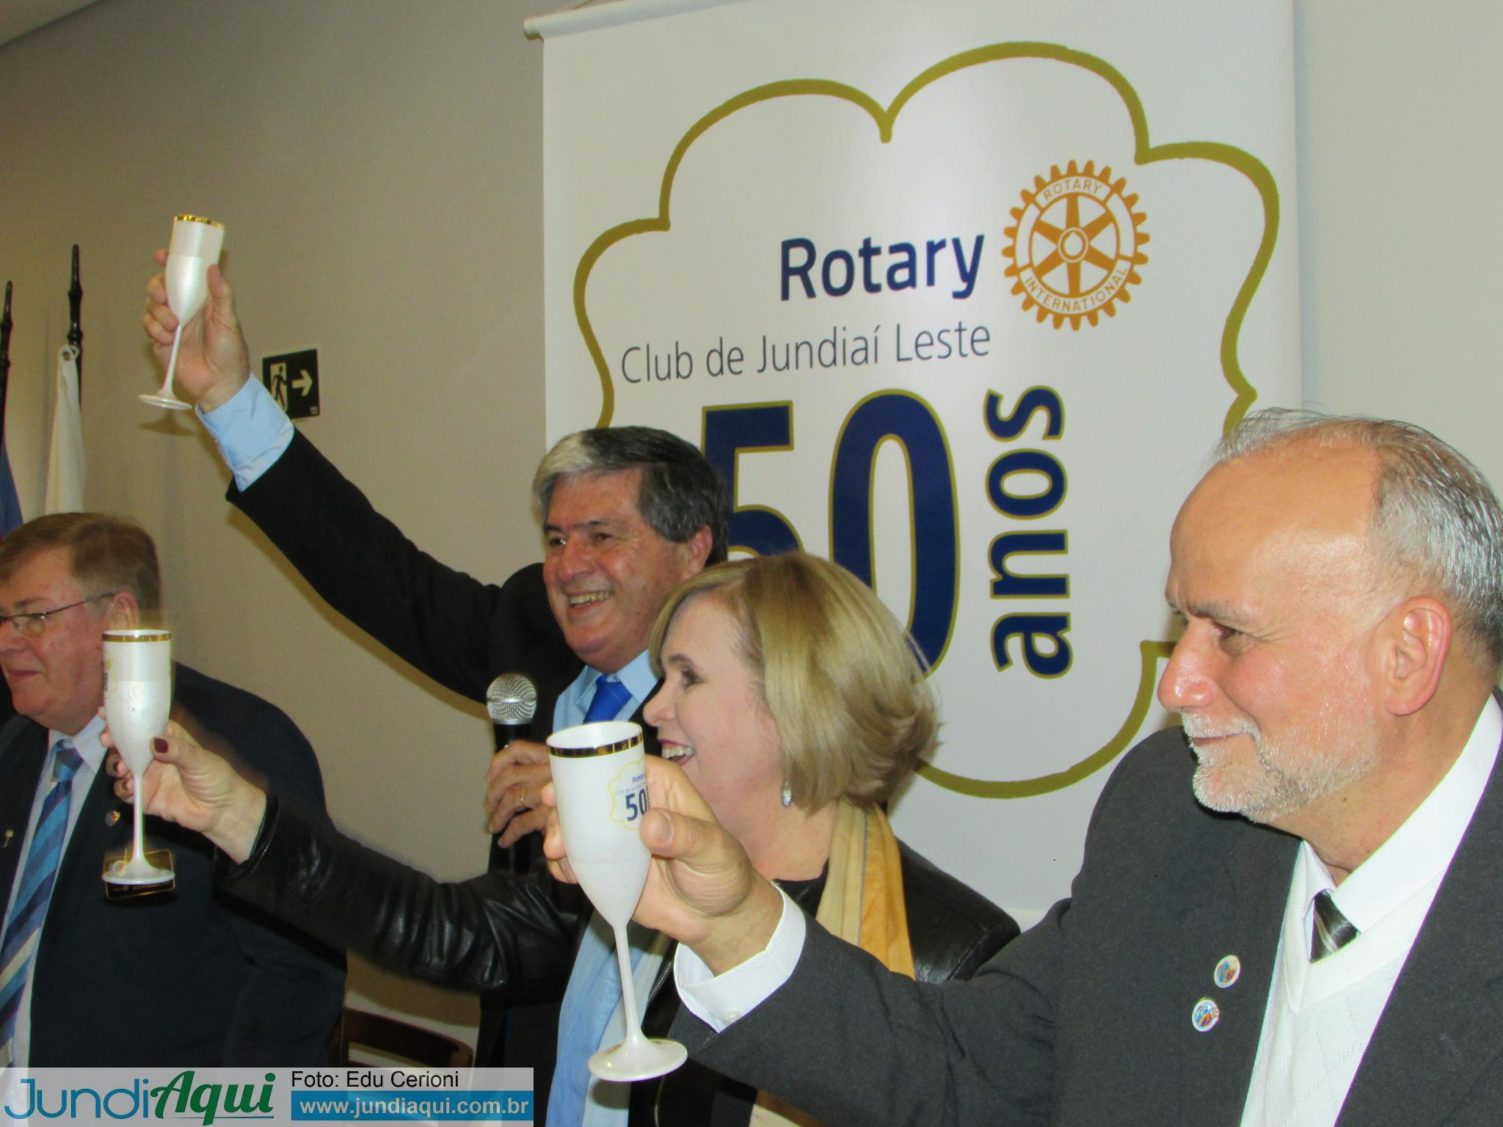  Rotary Club 50 anos: festa chega em 230 fotos ao JundiAqui